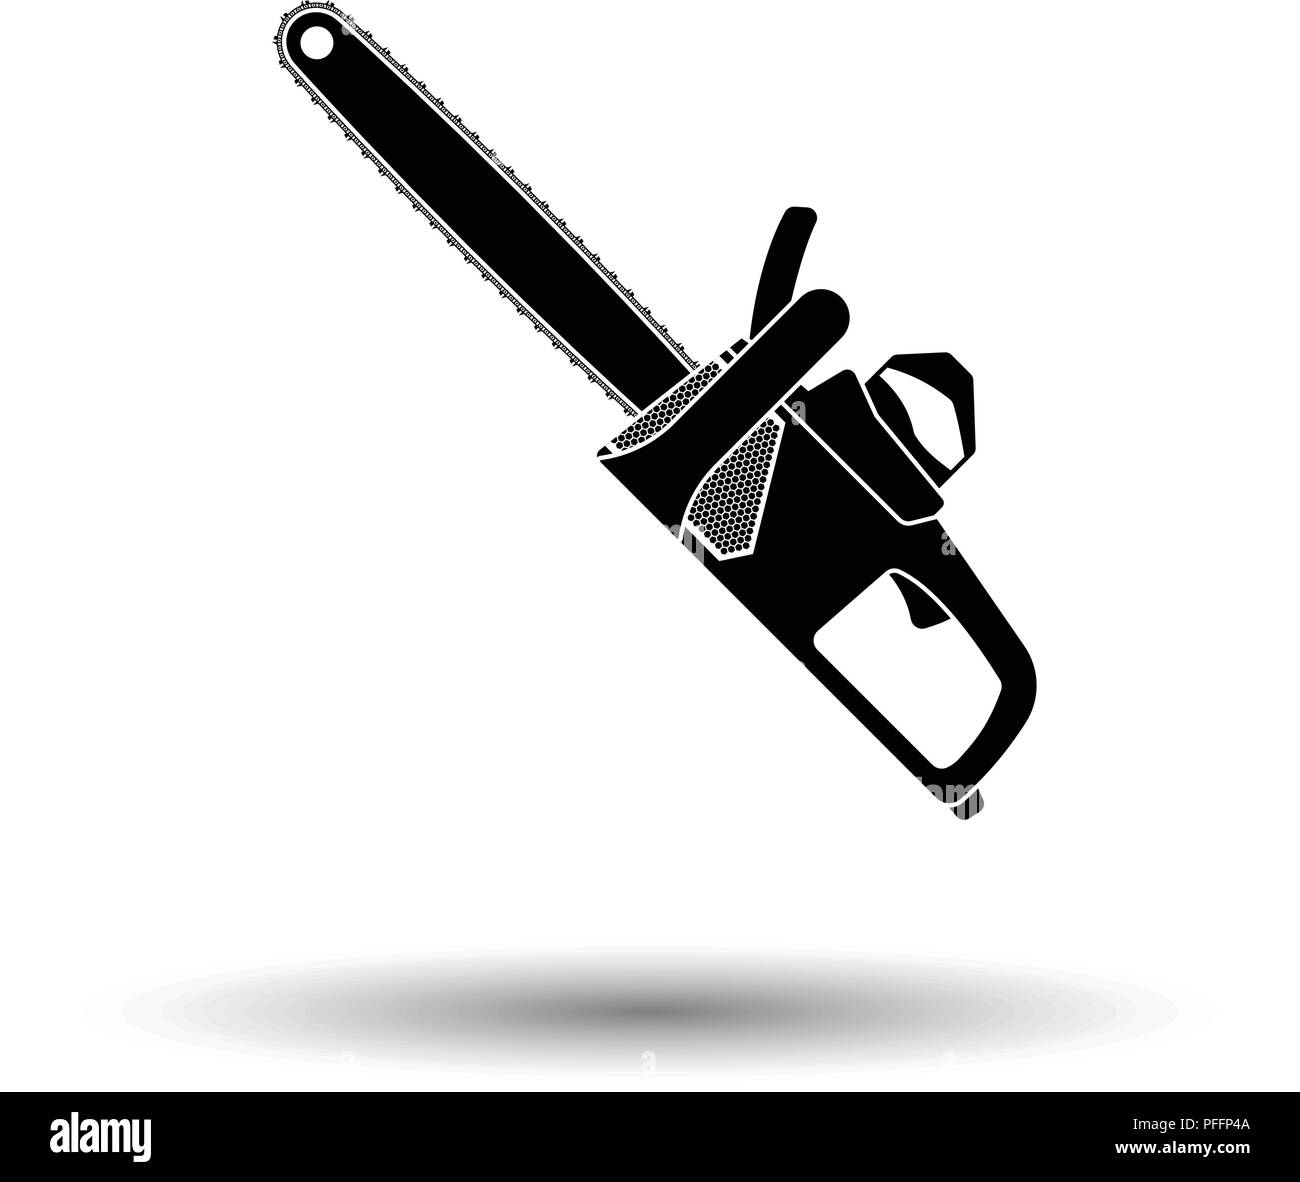 Kettensäge-Symbol. Weißen Hintergrund mit Schatten Design.  Vektor-Illustration Stock-Vektorgrafik - Alamy